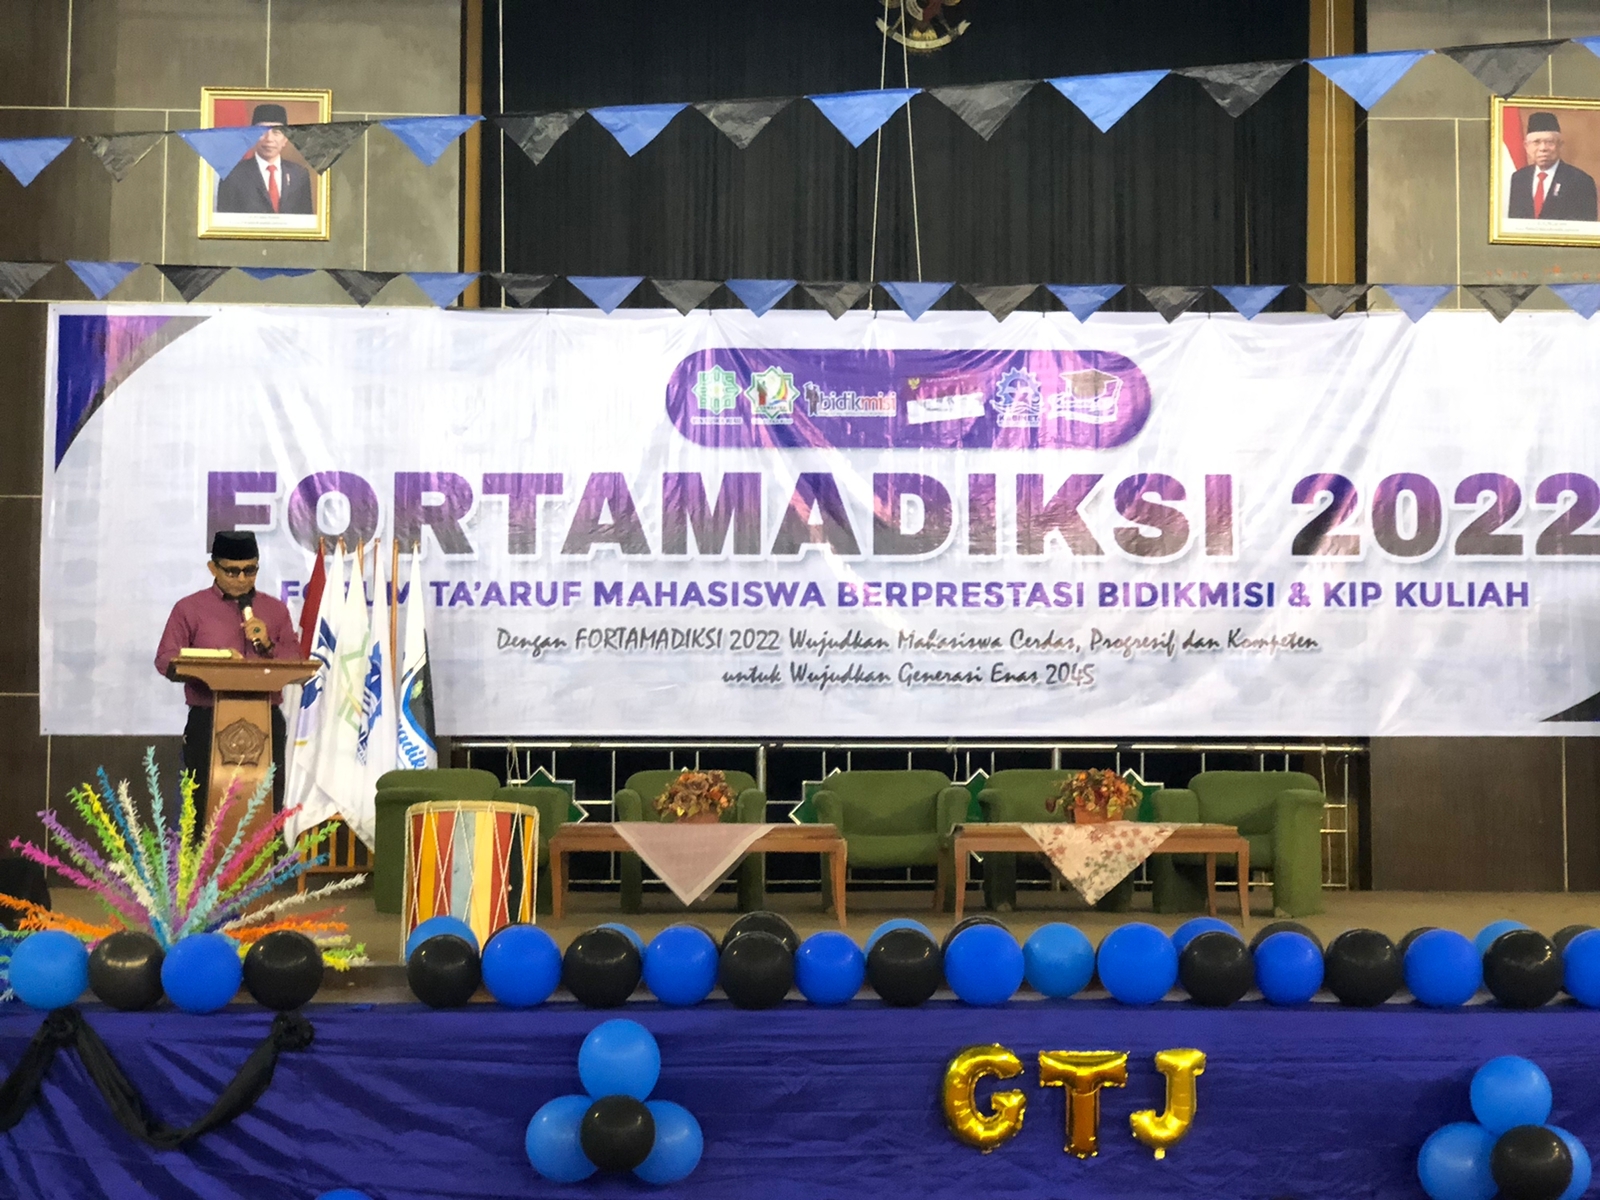 Formadiksi UIN Suska Riau Menggelar Forum Ta'aruf Mahasiswa Berprestasi Bidikmisi dan KIP Kuliah